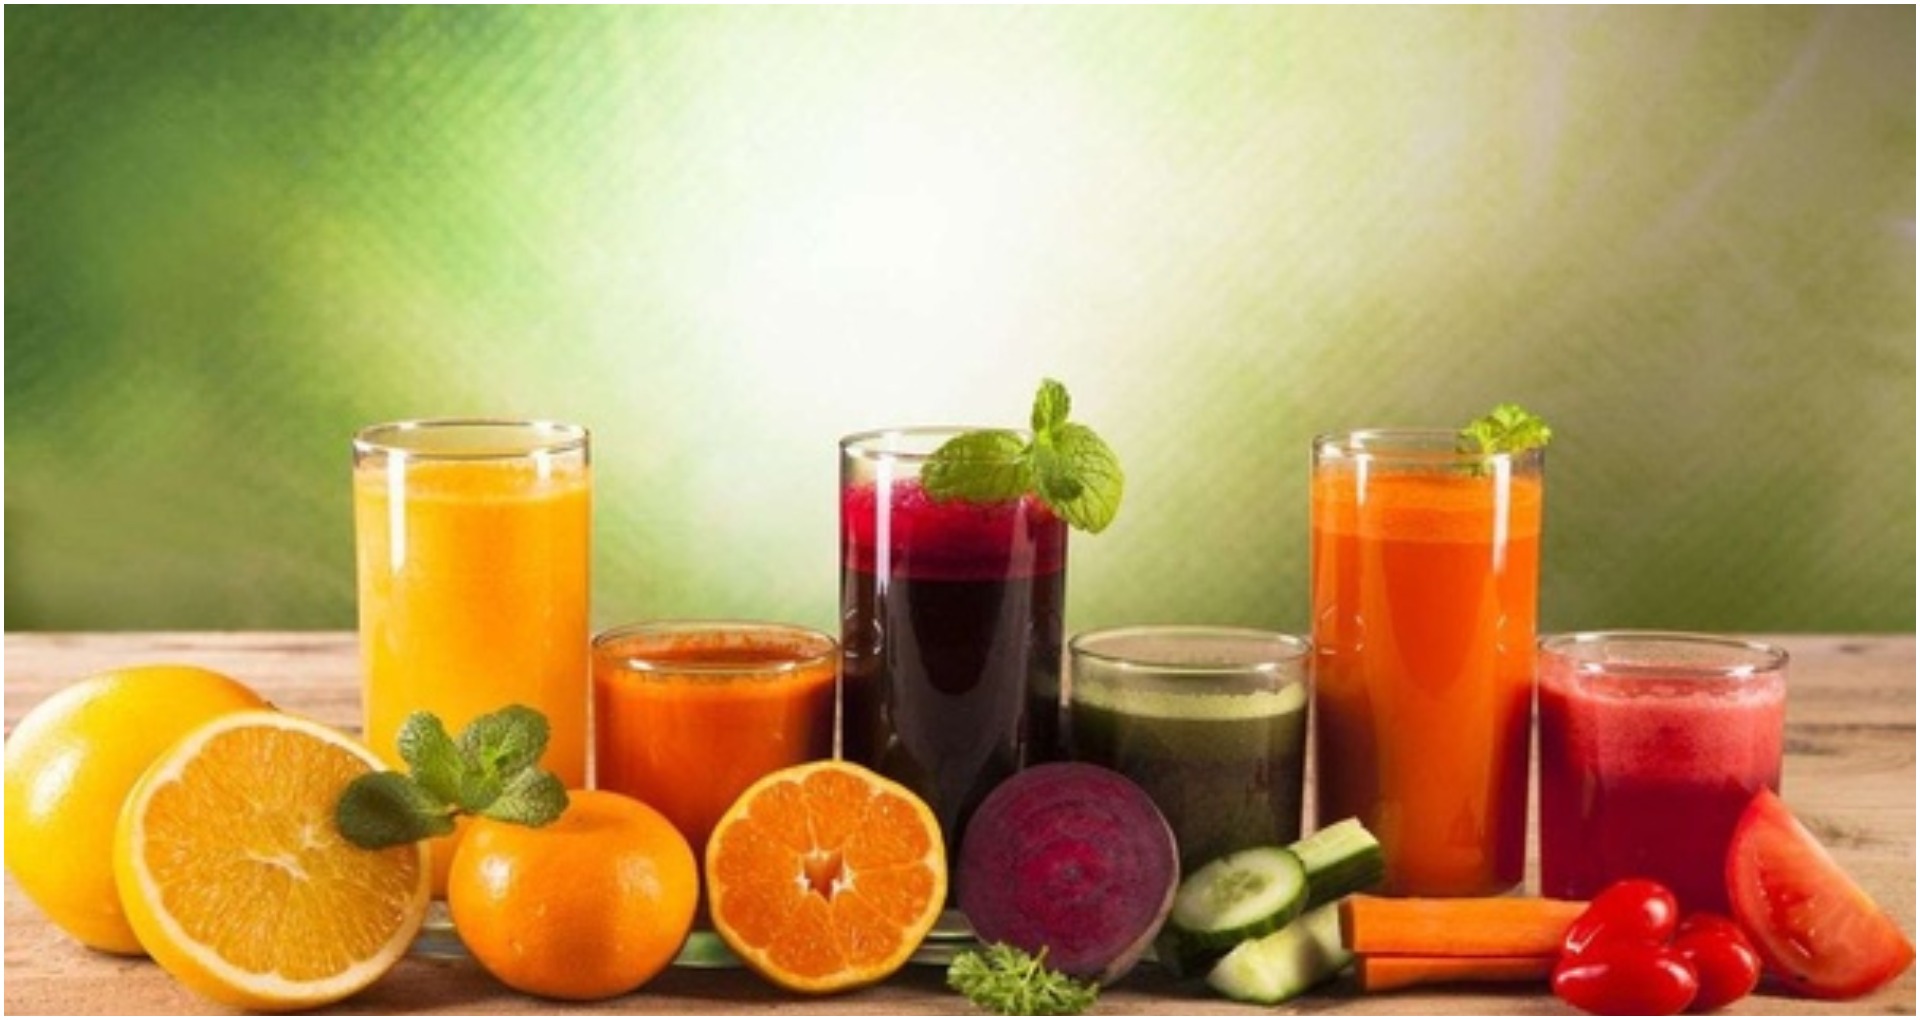 Healthy Juices for Winter: सर्दियों में करे इन सब्जियों के जूस का सेवन, आपके सेहत को तरोताज़ा रखेगी